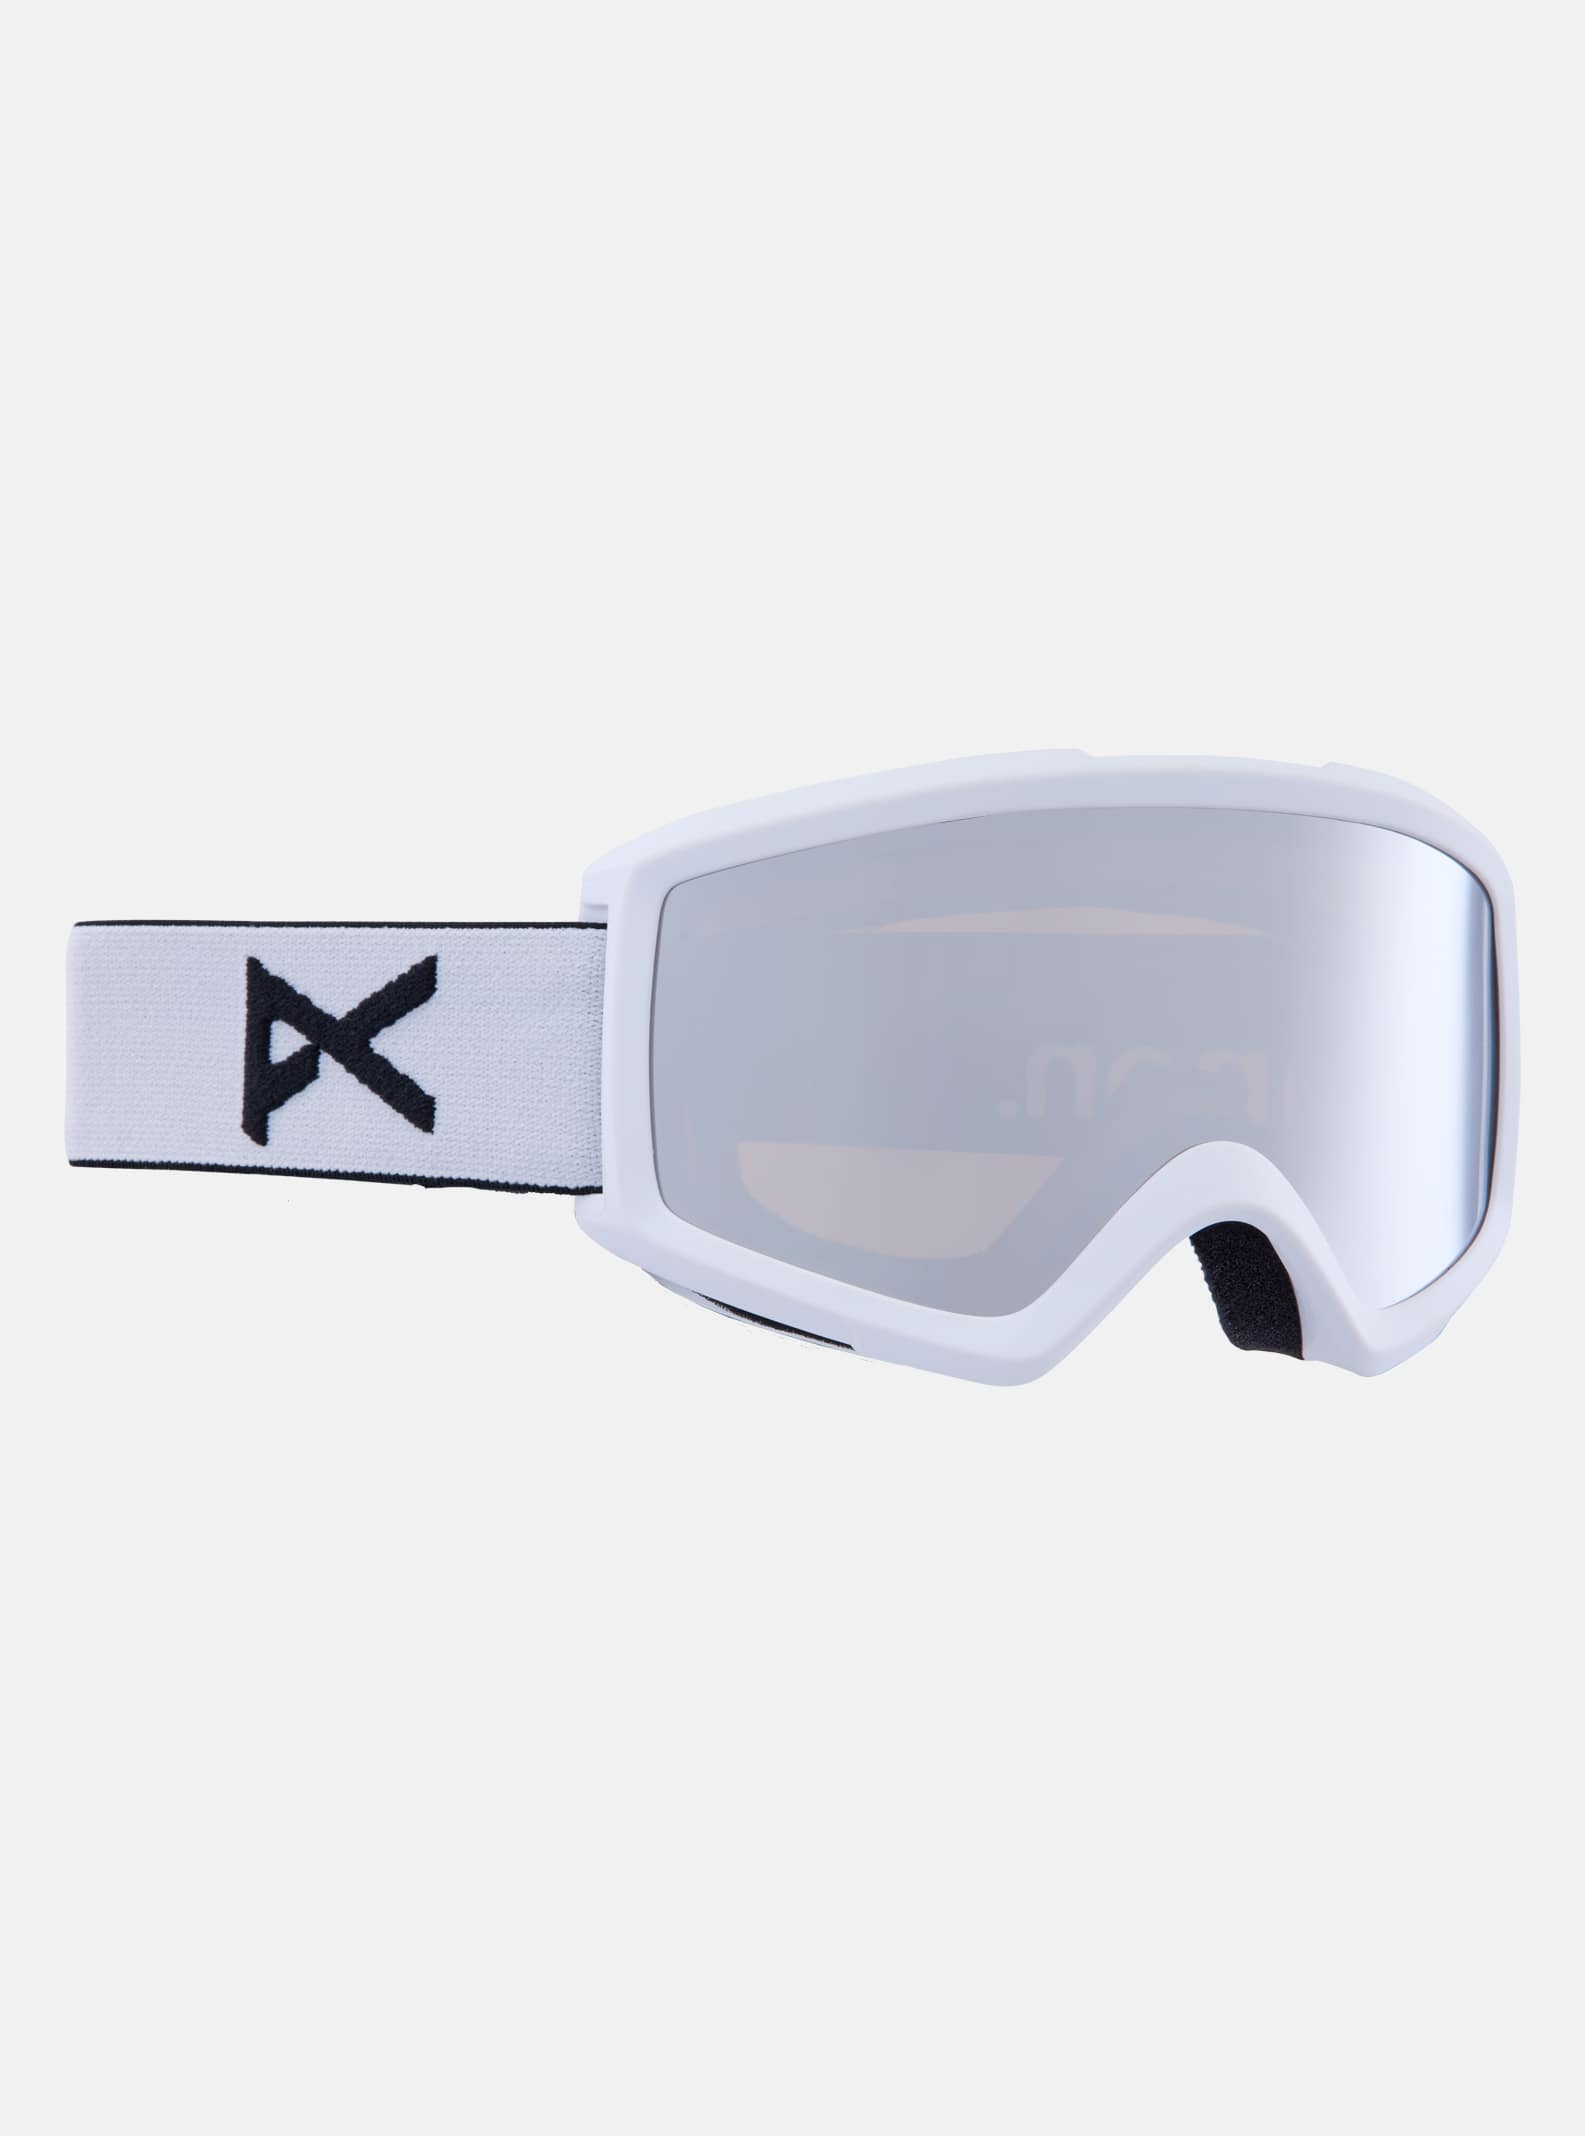 Anon - Masque Helix 2.0 + écran de rechange, Frame: White, Lens: Silver Amber (35% / S2), Spare Lens